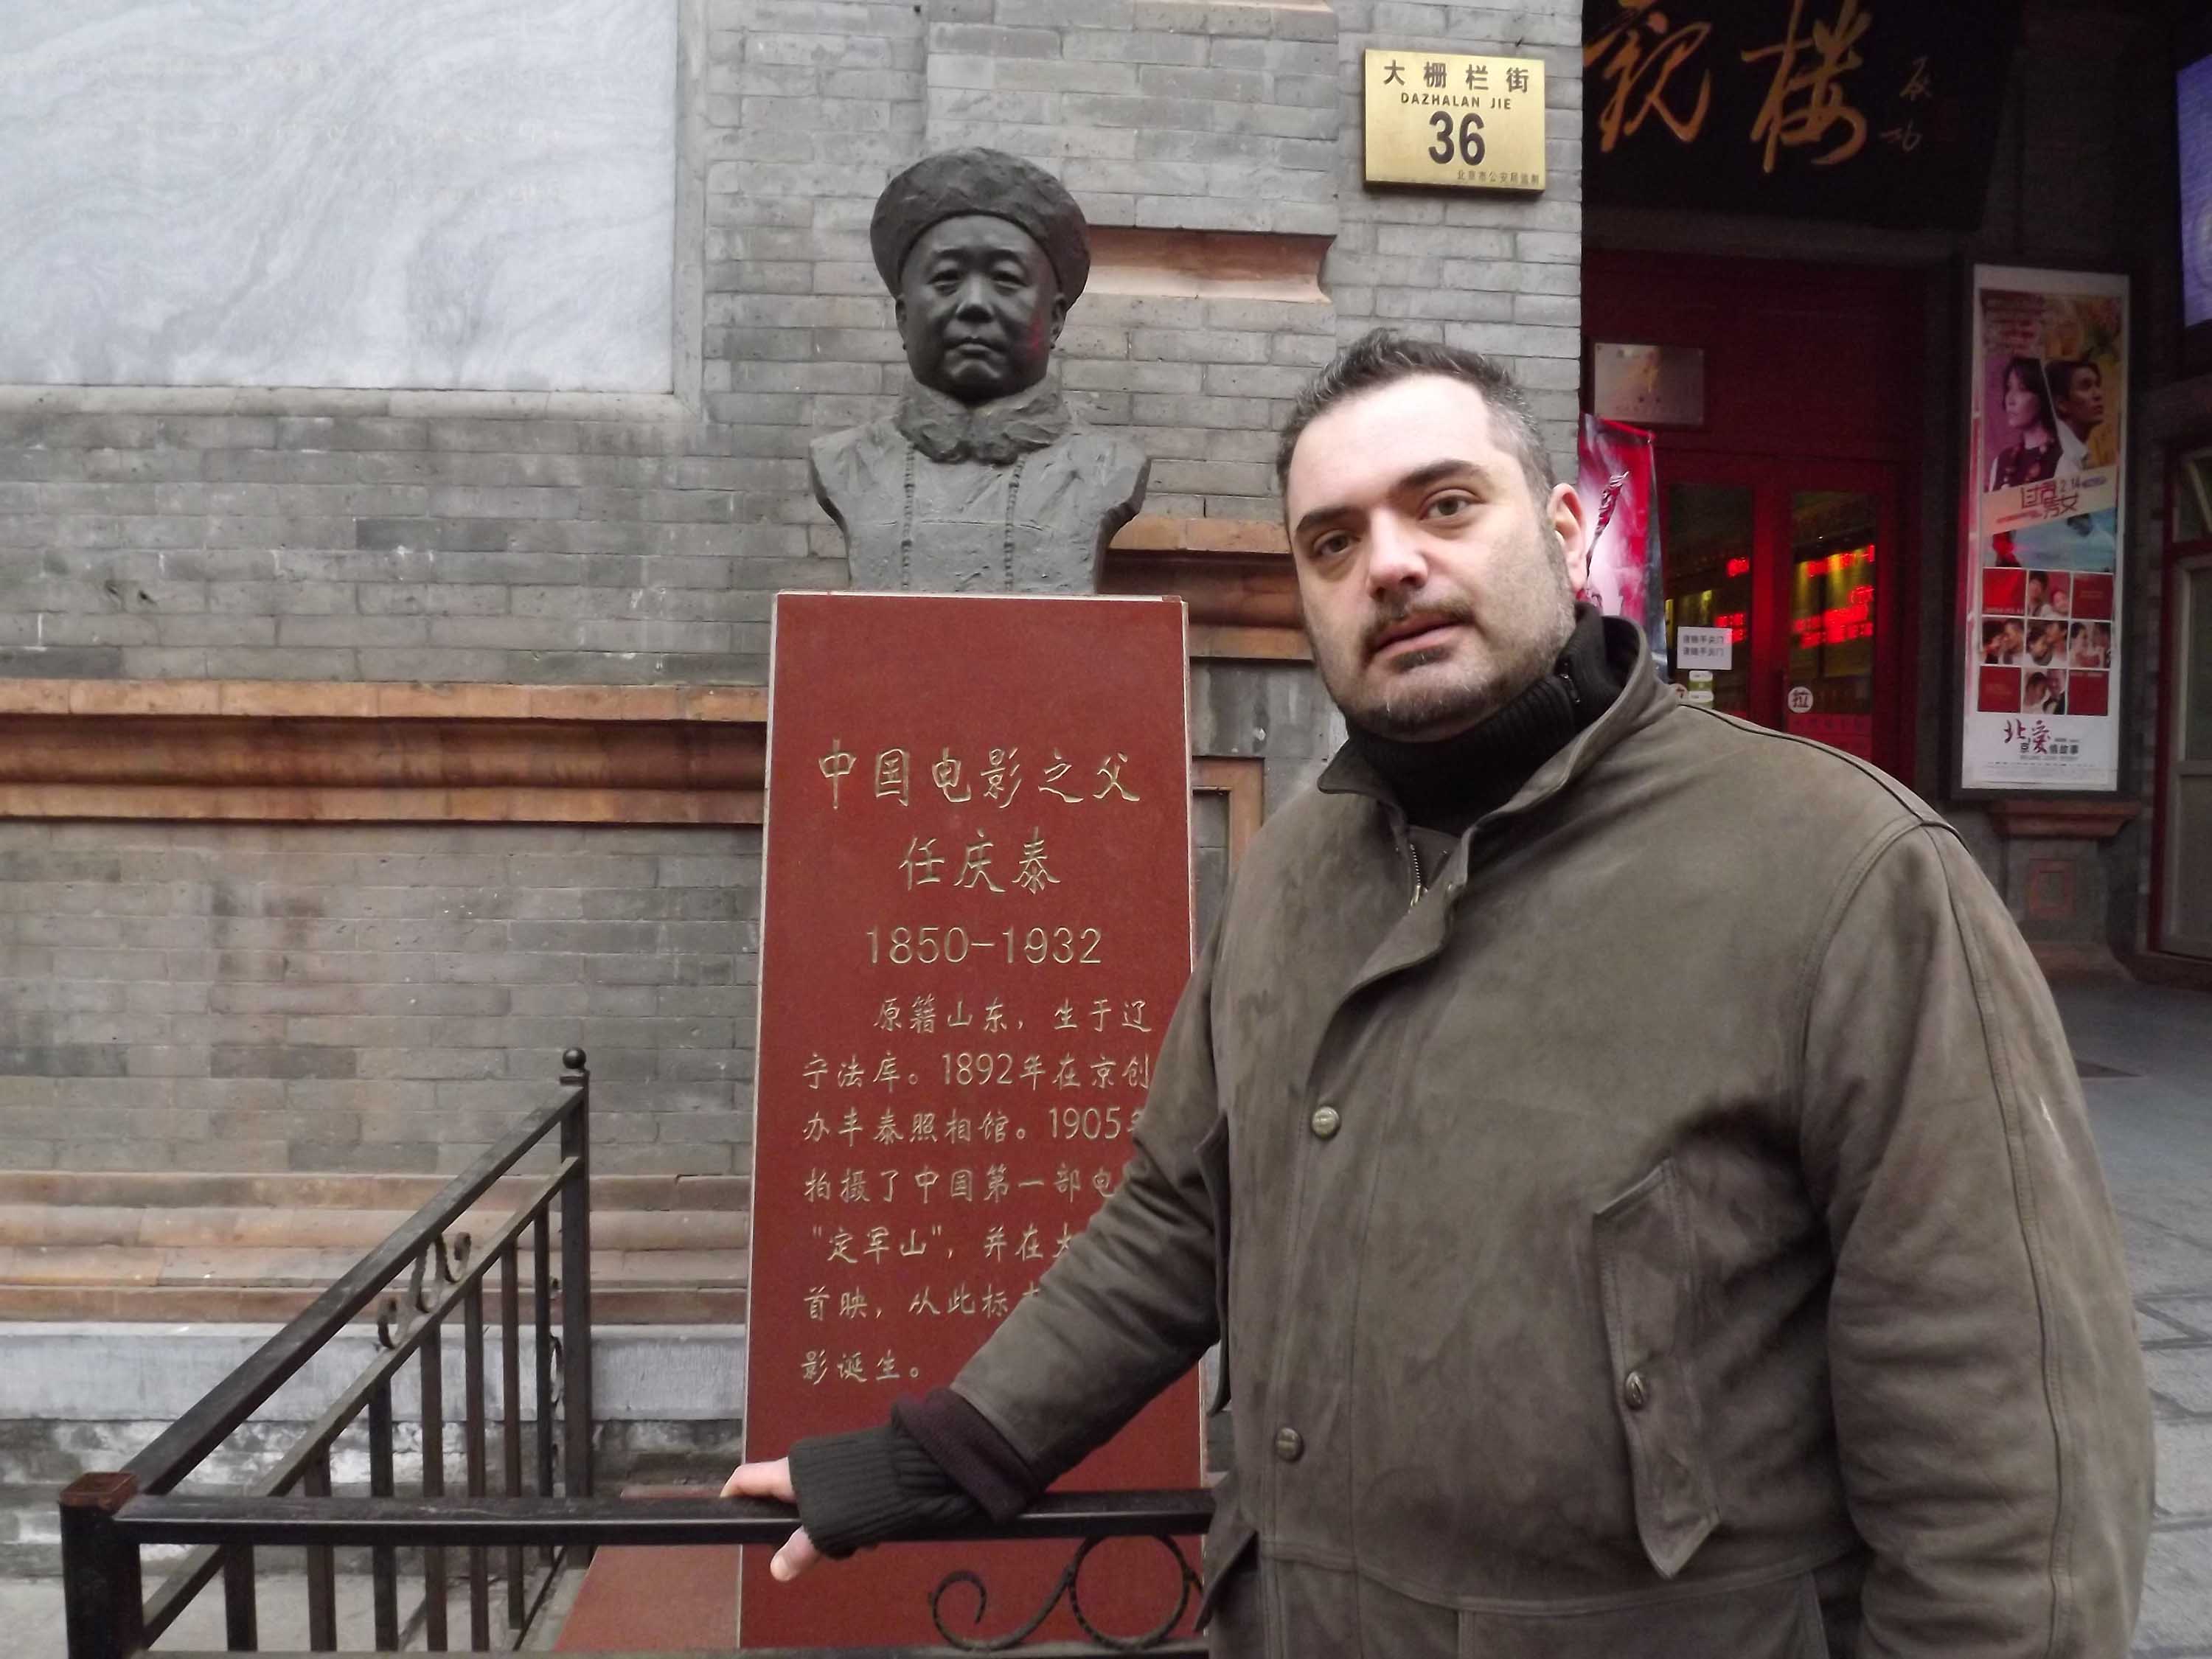 Marco Meccarelli Cina con stele primo studio fotografico di Pechino